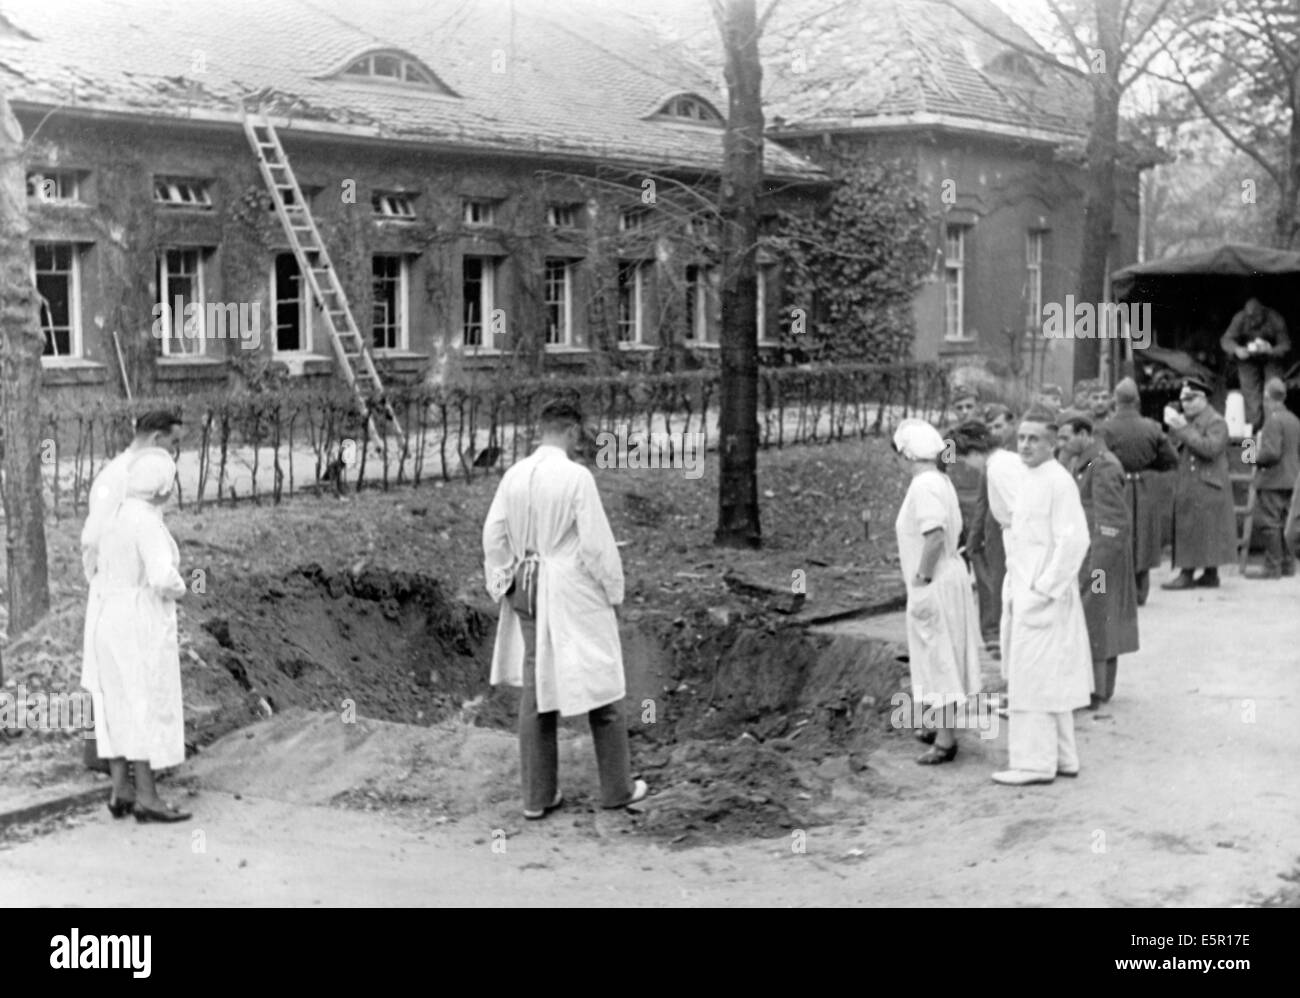 Das Bild aus einem Nazi-Nachrichtenbericht zeigt die Zerstörung im Rudolf Virchnow Hospital nach einem britischen Luftangriff in Berlin, Deutschland, Oktober 1940. Fotoarchiv für Zeitgeschichte - KEIN KABELDIENST Stockfoto